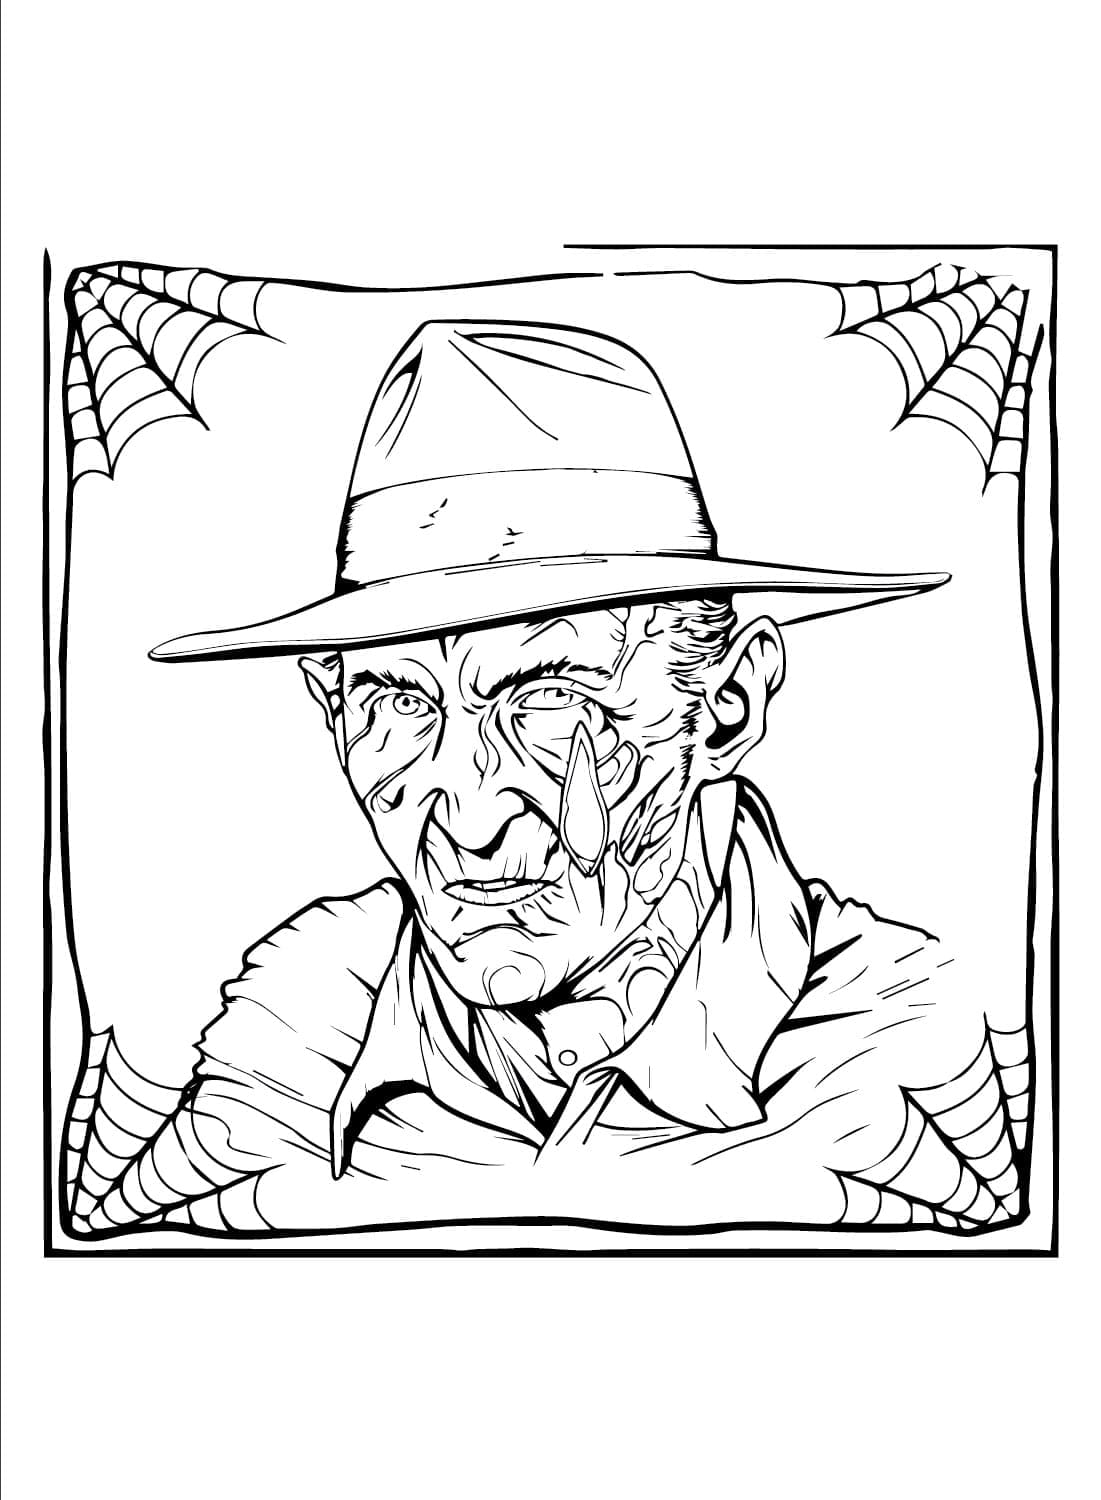 Horreur Freddy Krueger coloring page